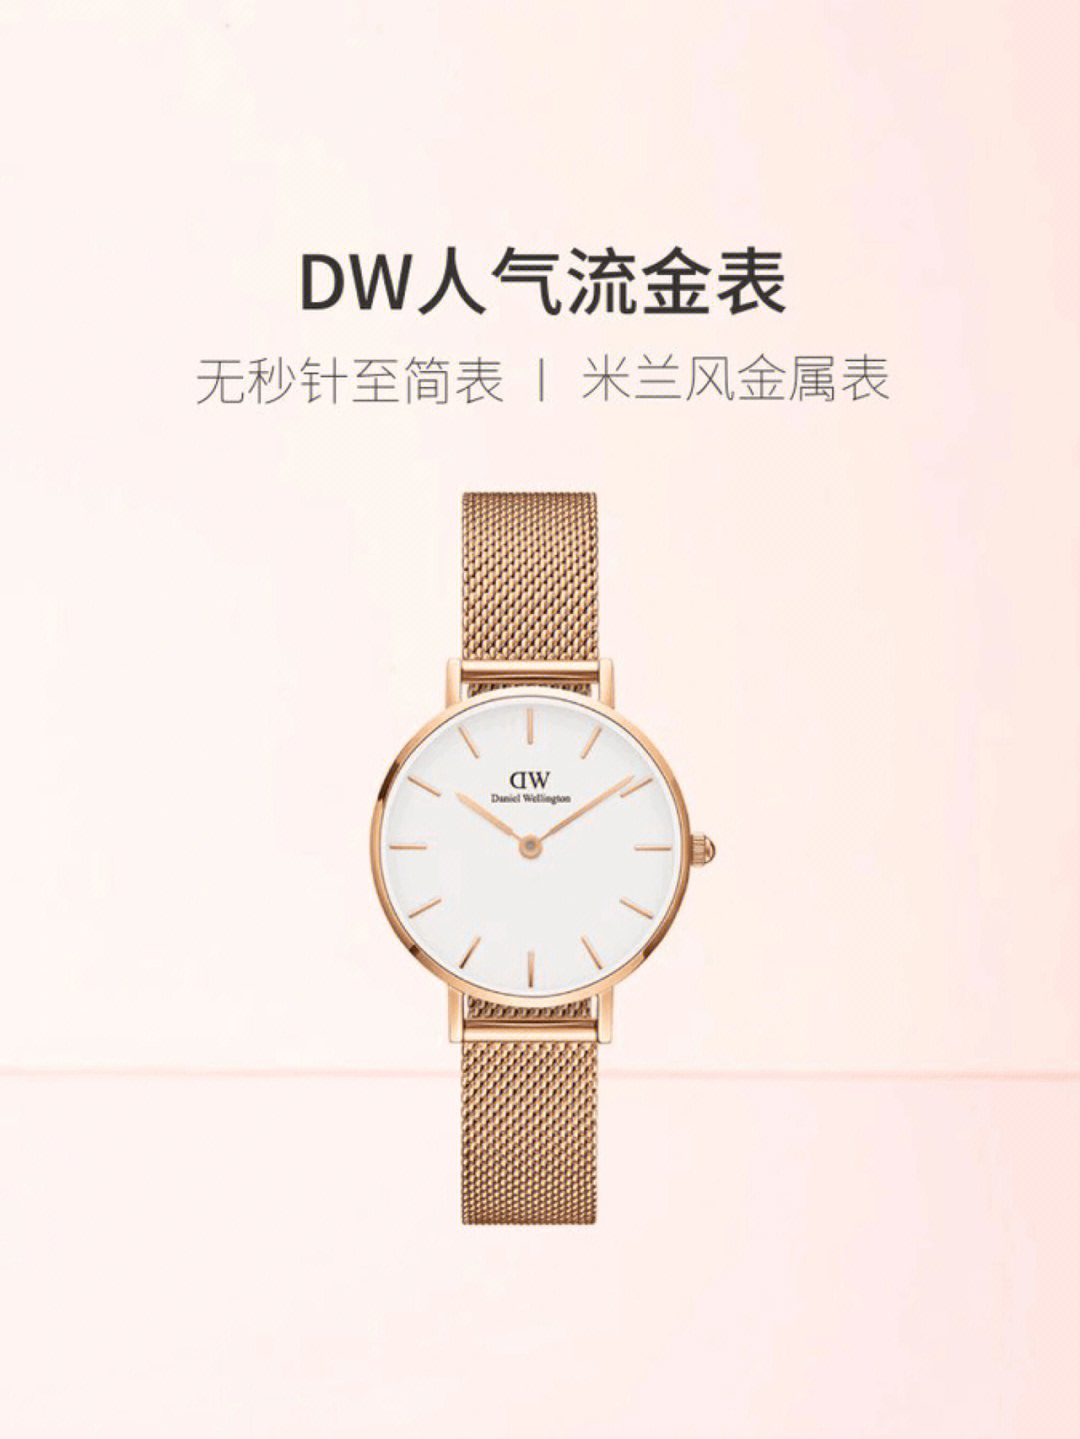 dw手表宣传语图片